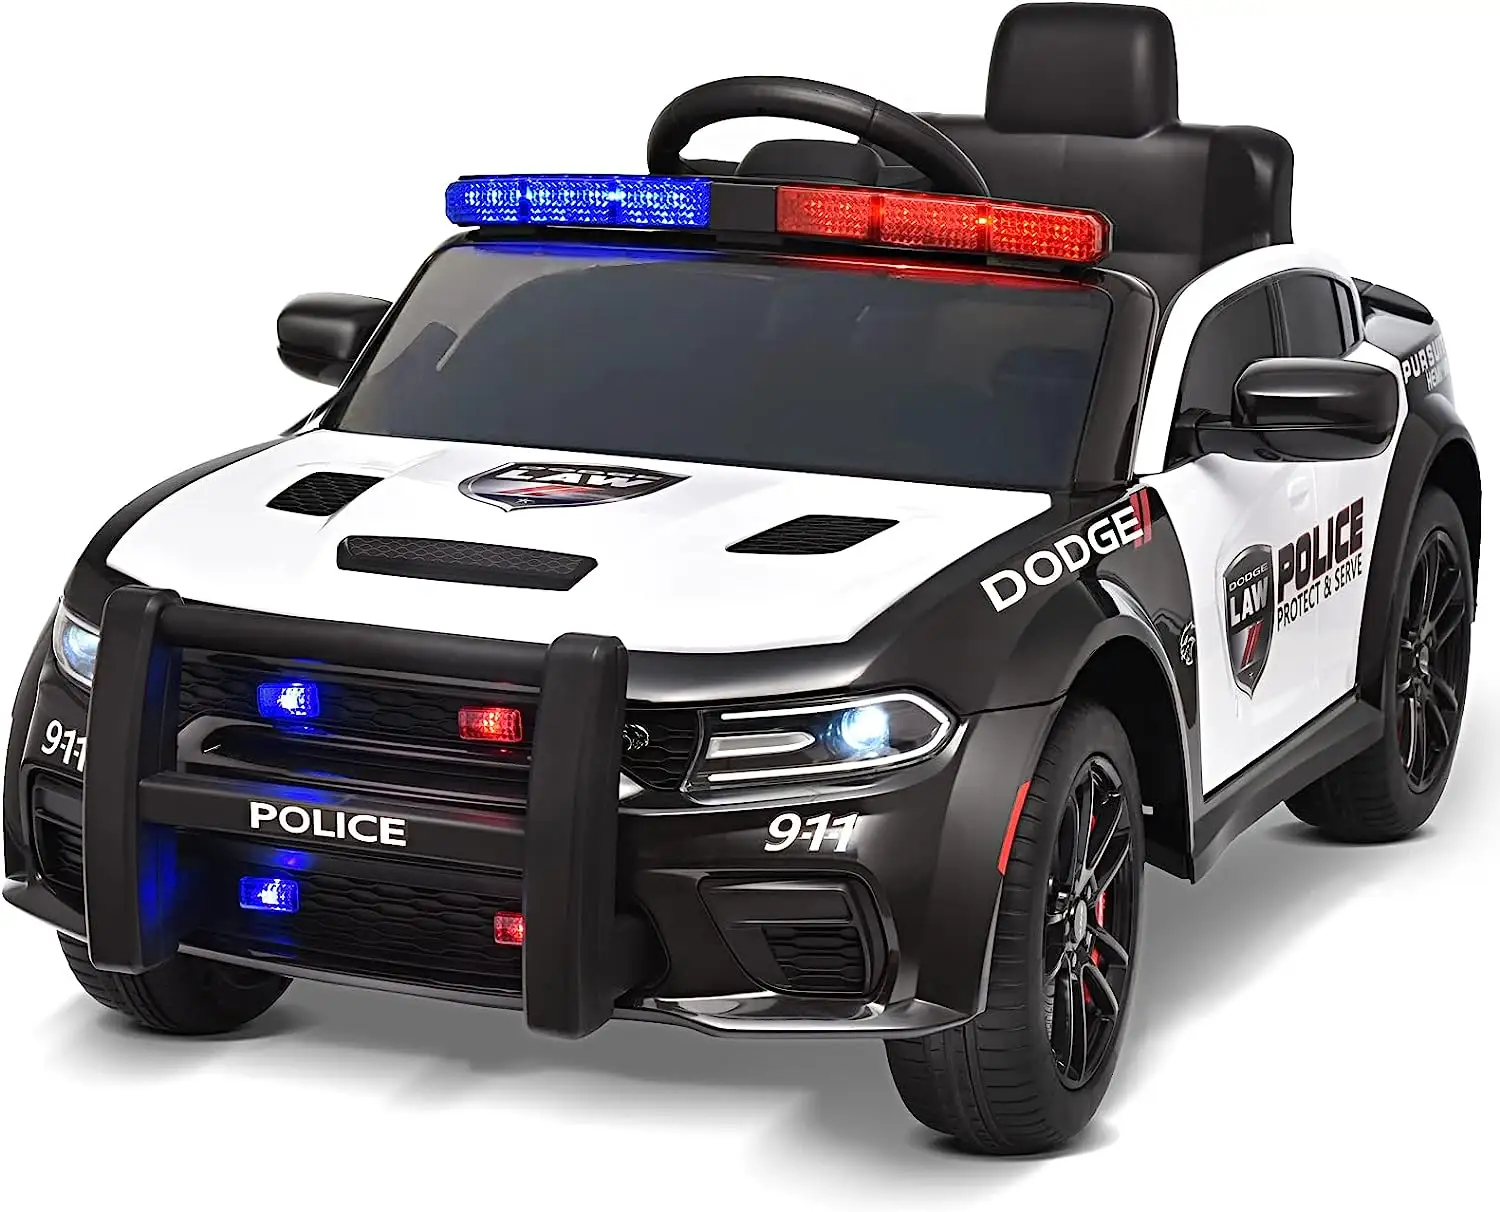 سيارة شرطة دودج للأطفال مرخصة جديدة من Dalisi ، لعبة كهربائية للأطفال بجهاز تحكم عن بعد 12 فولت ، سيارة ركوب للأطفال للقيادة